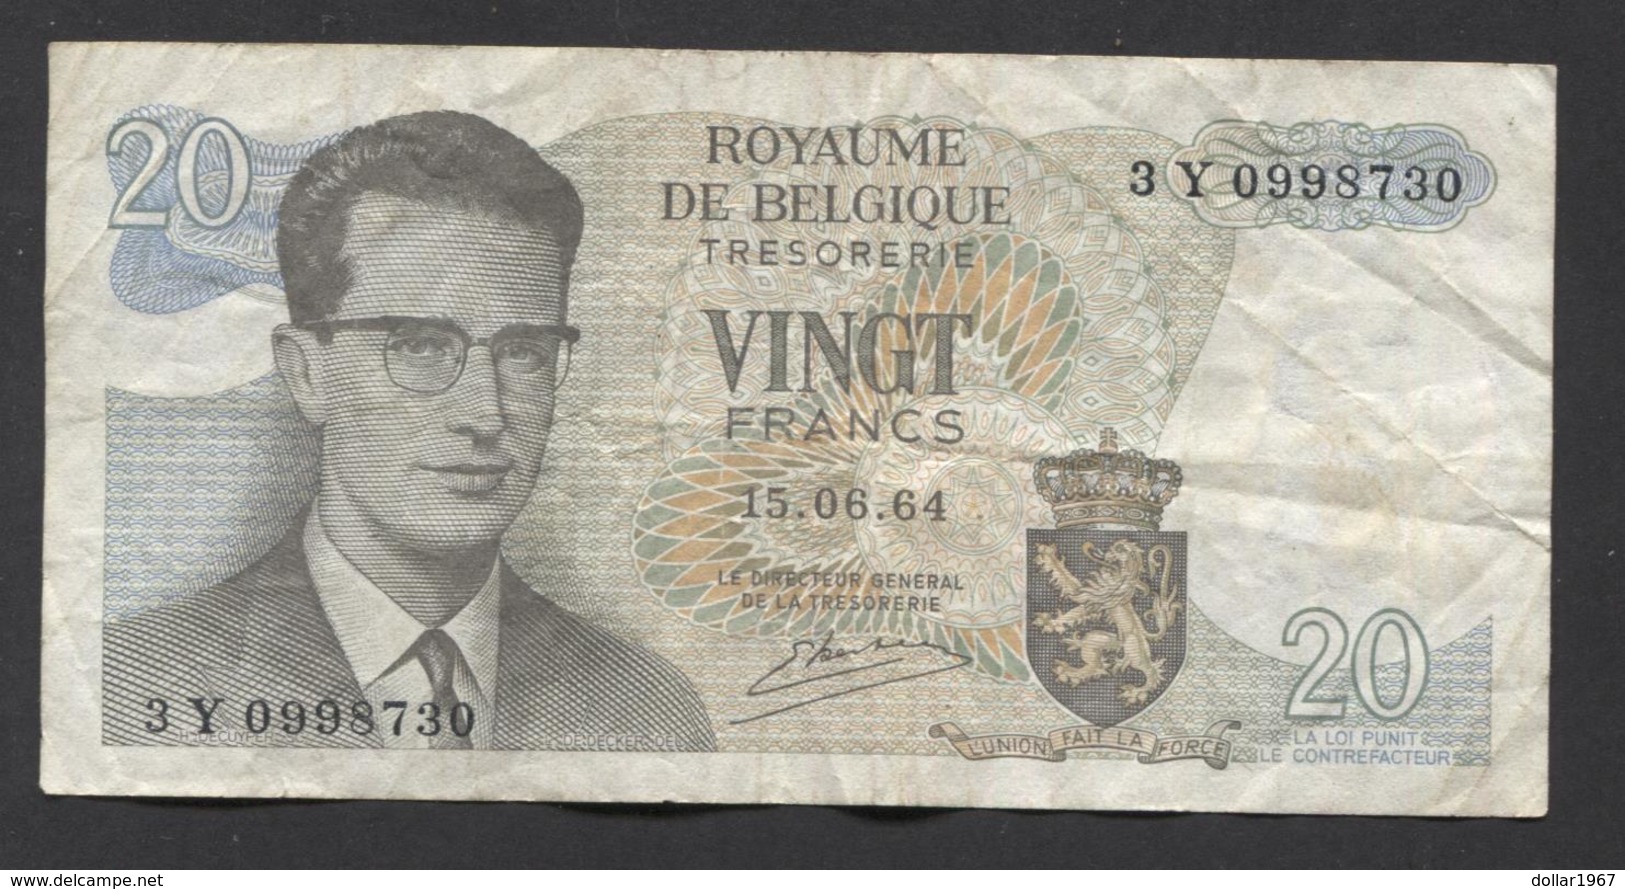 België Belgique Belgium 15 06 1964 -  20 Francs Atomium Baudouin. 3 Y 0998730 - 20 Franchi